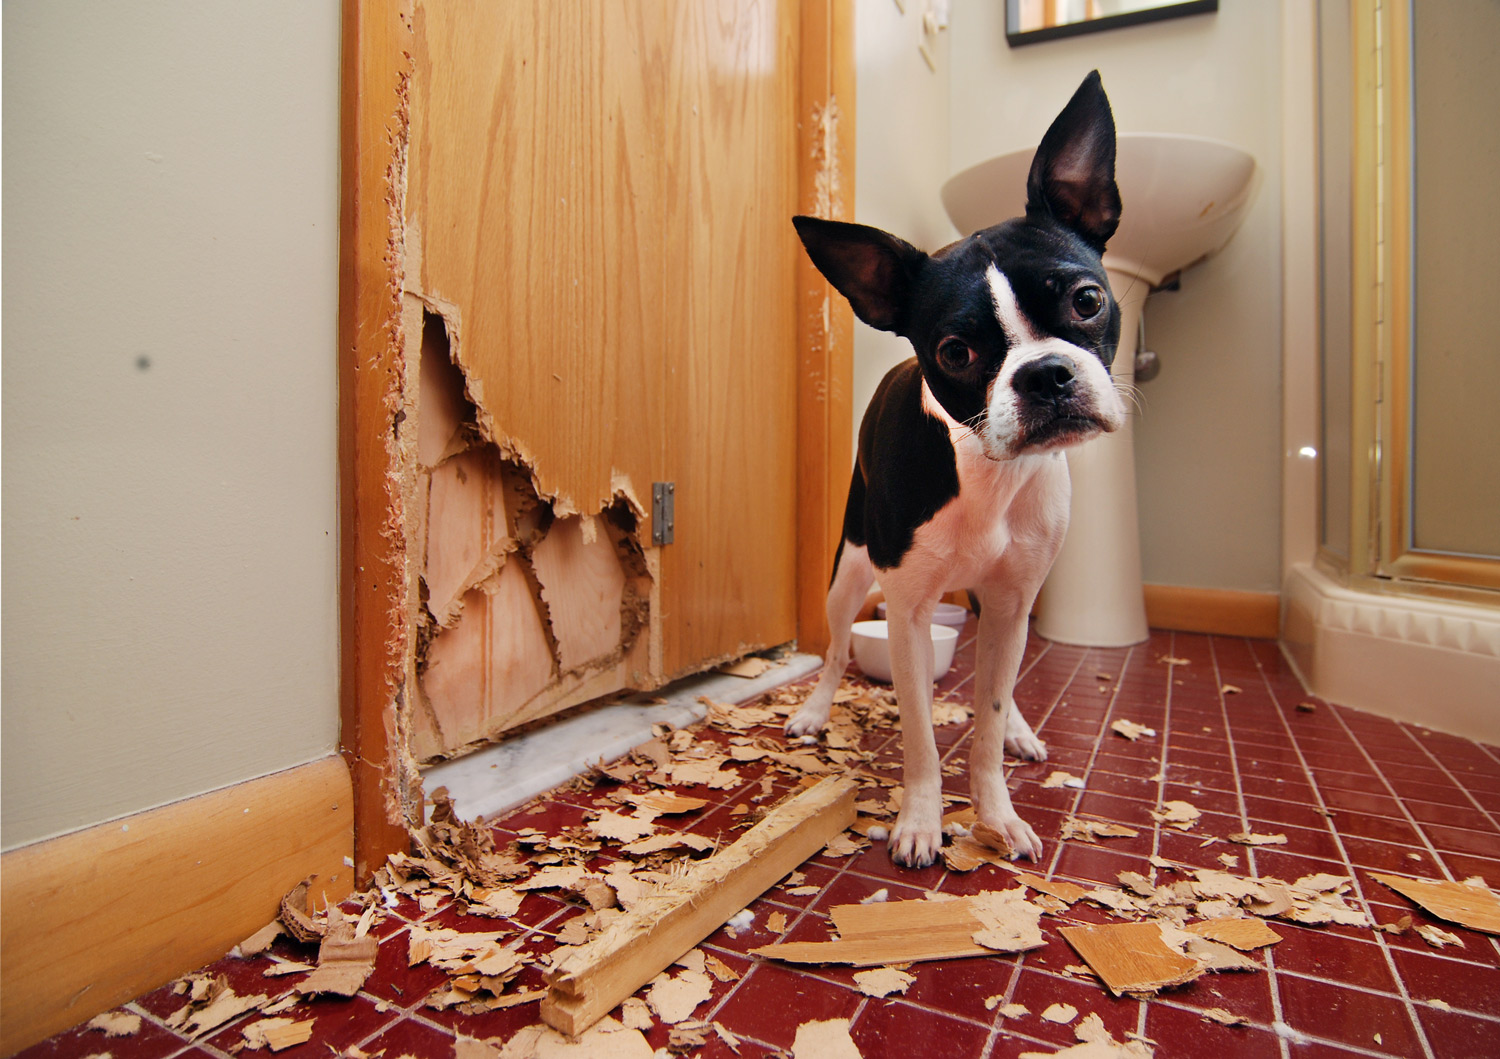 Cuidado, ao punir seu cão você pode agravar ainda mais o mau comportamento